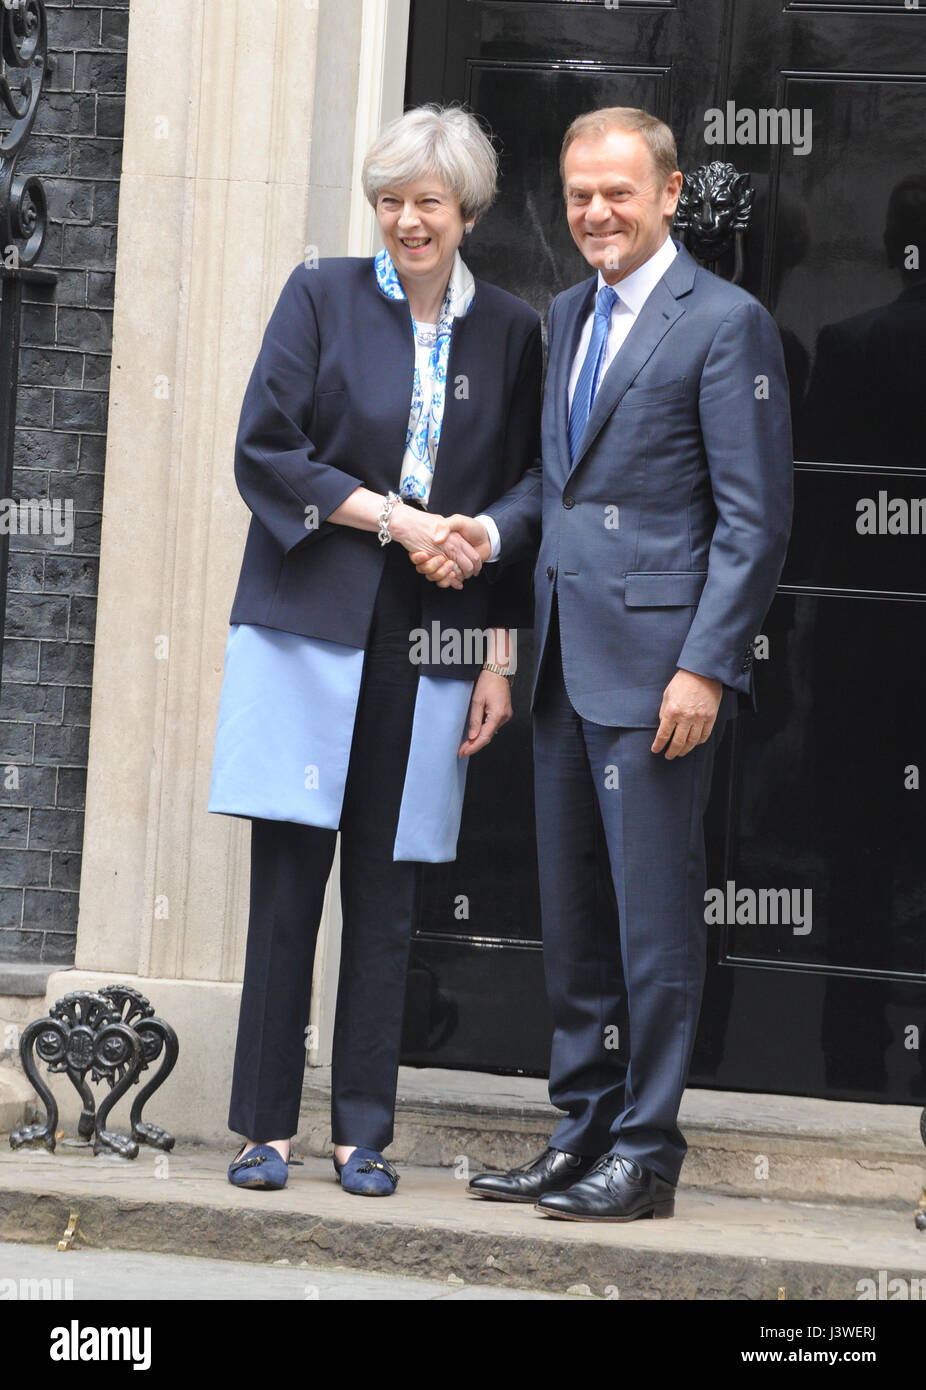 La Gran Bretagna è il primo ministro Theresa Maggio incontra Donald Tusk, Presidente del Consiglio europeo a Downing Street con: Theresa Maggio, Donald Tusk dove: Londra, Regno Unito quando: 06 Apr 2017 Foto Stock